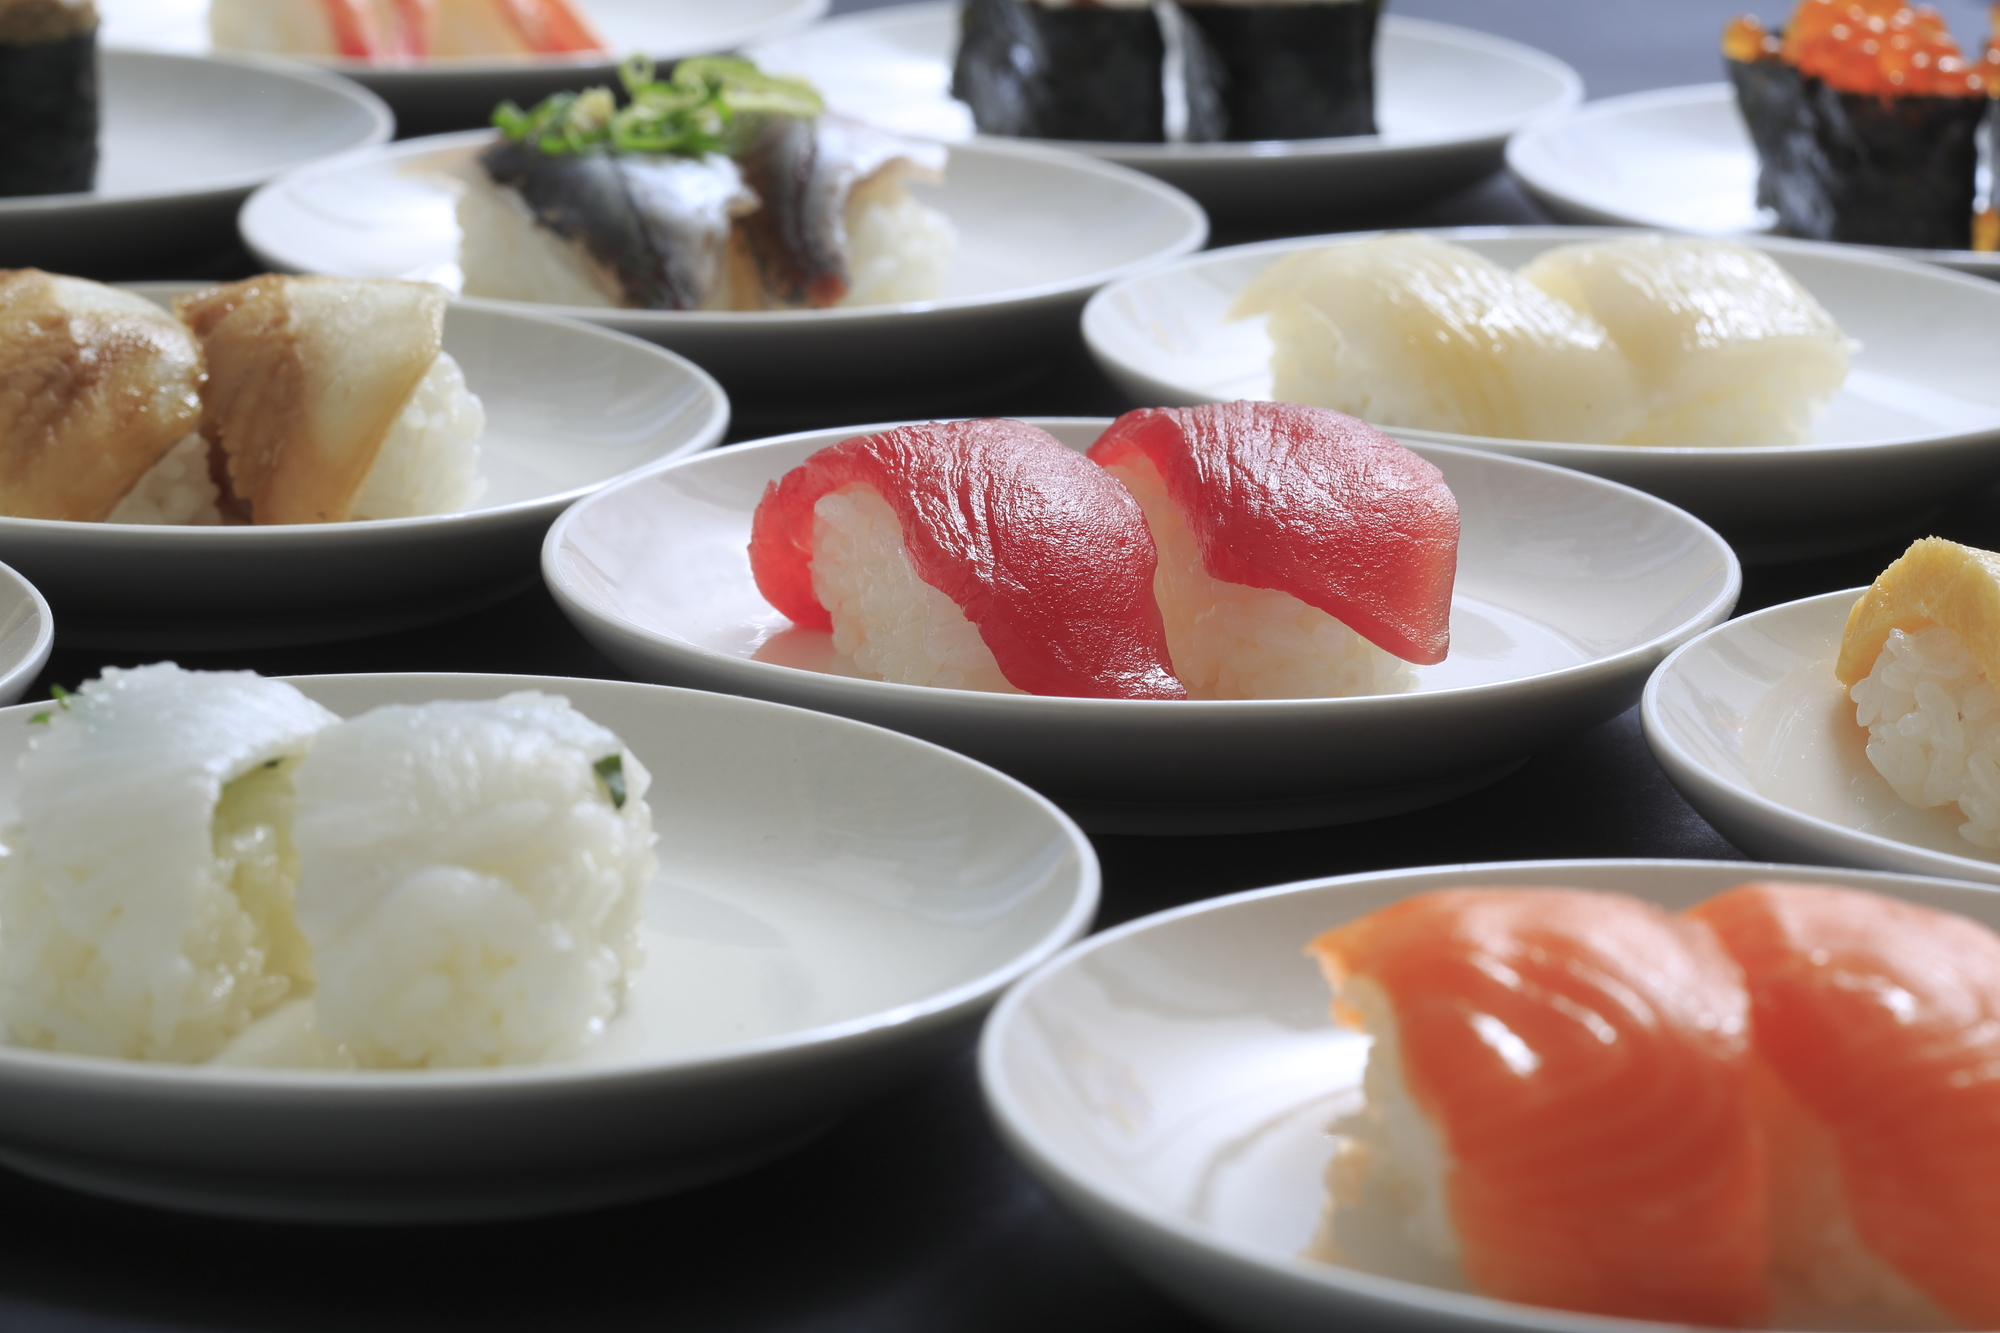 「回転寿司」で一皿目に食べる寿司ネタはなに？【2022年版人気投票実施中】 | ねとらぼ調査隊